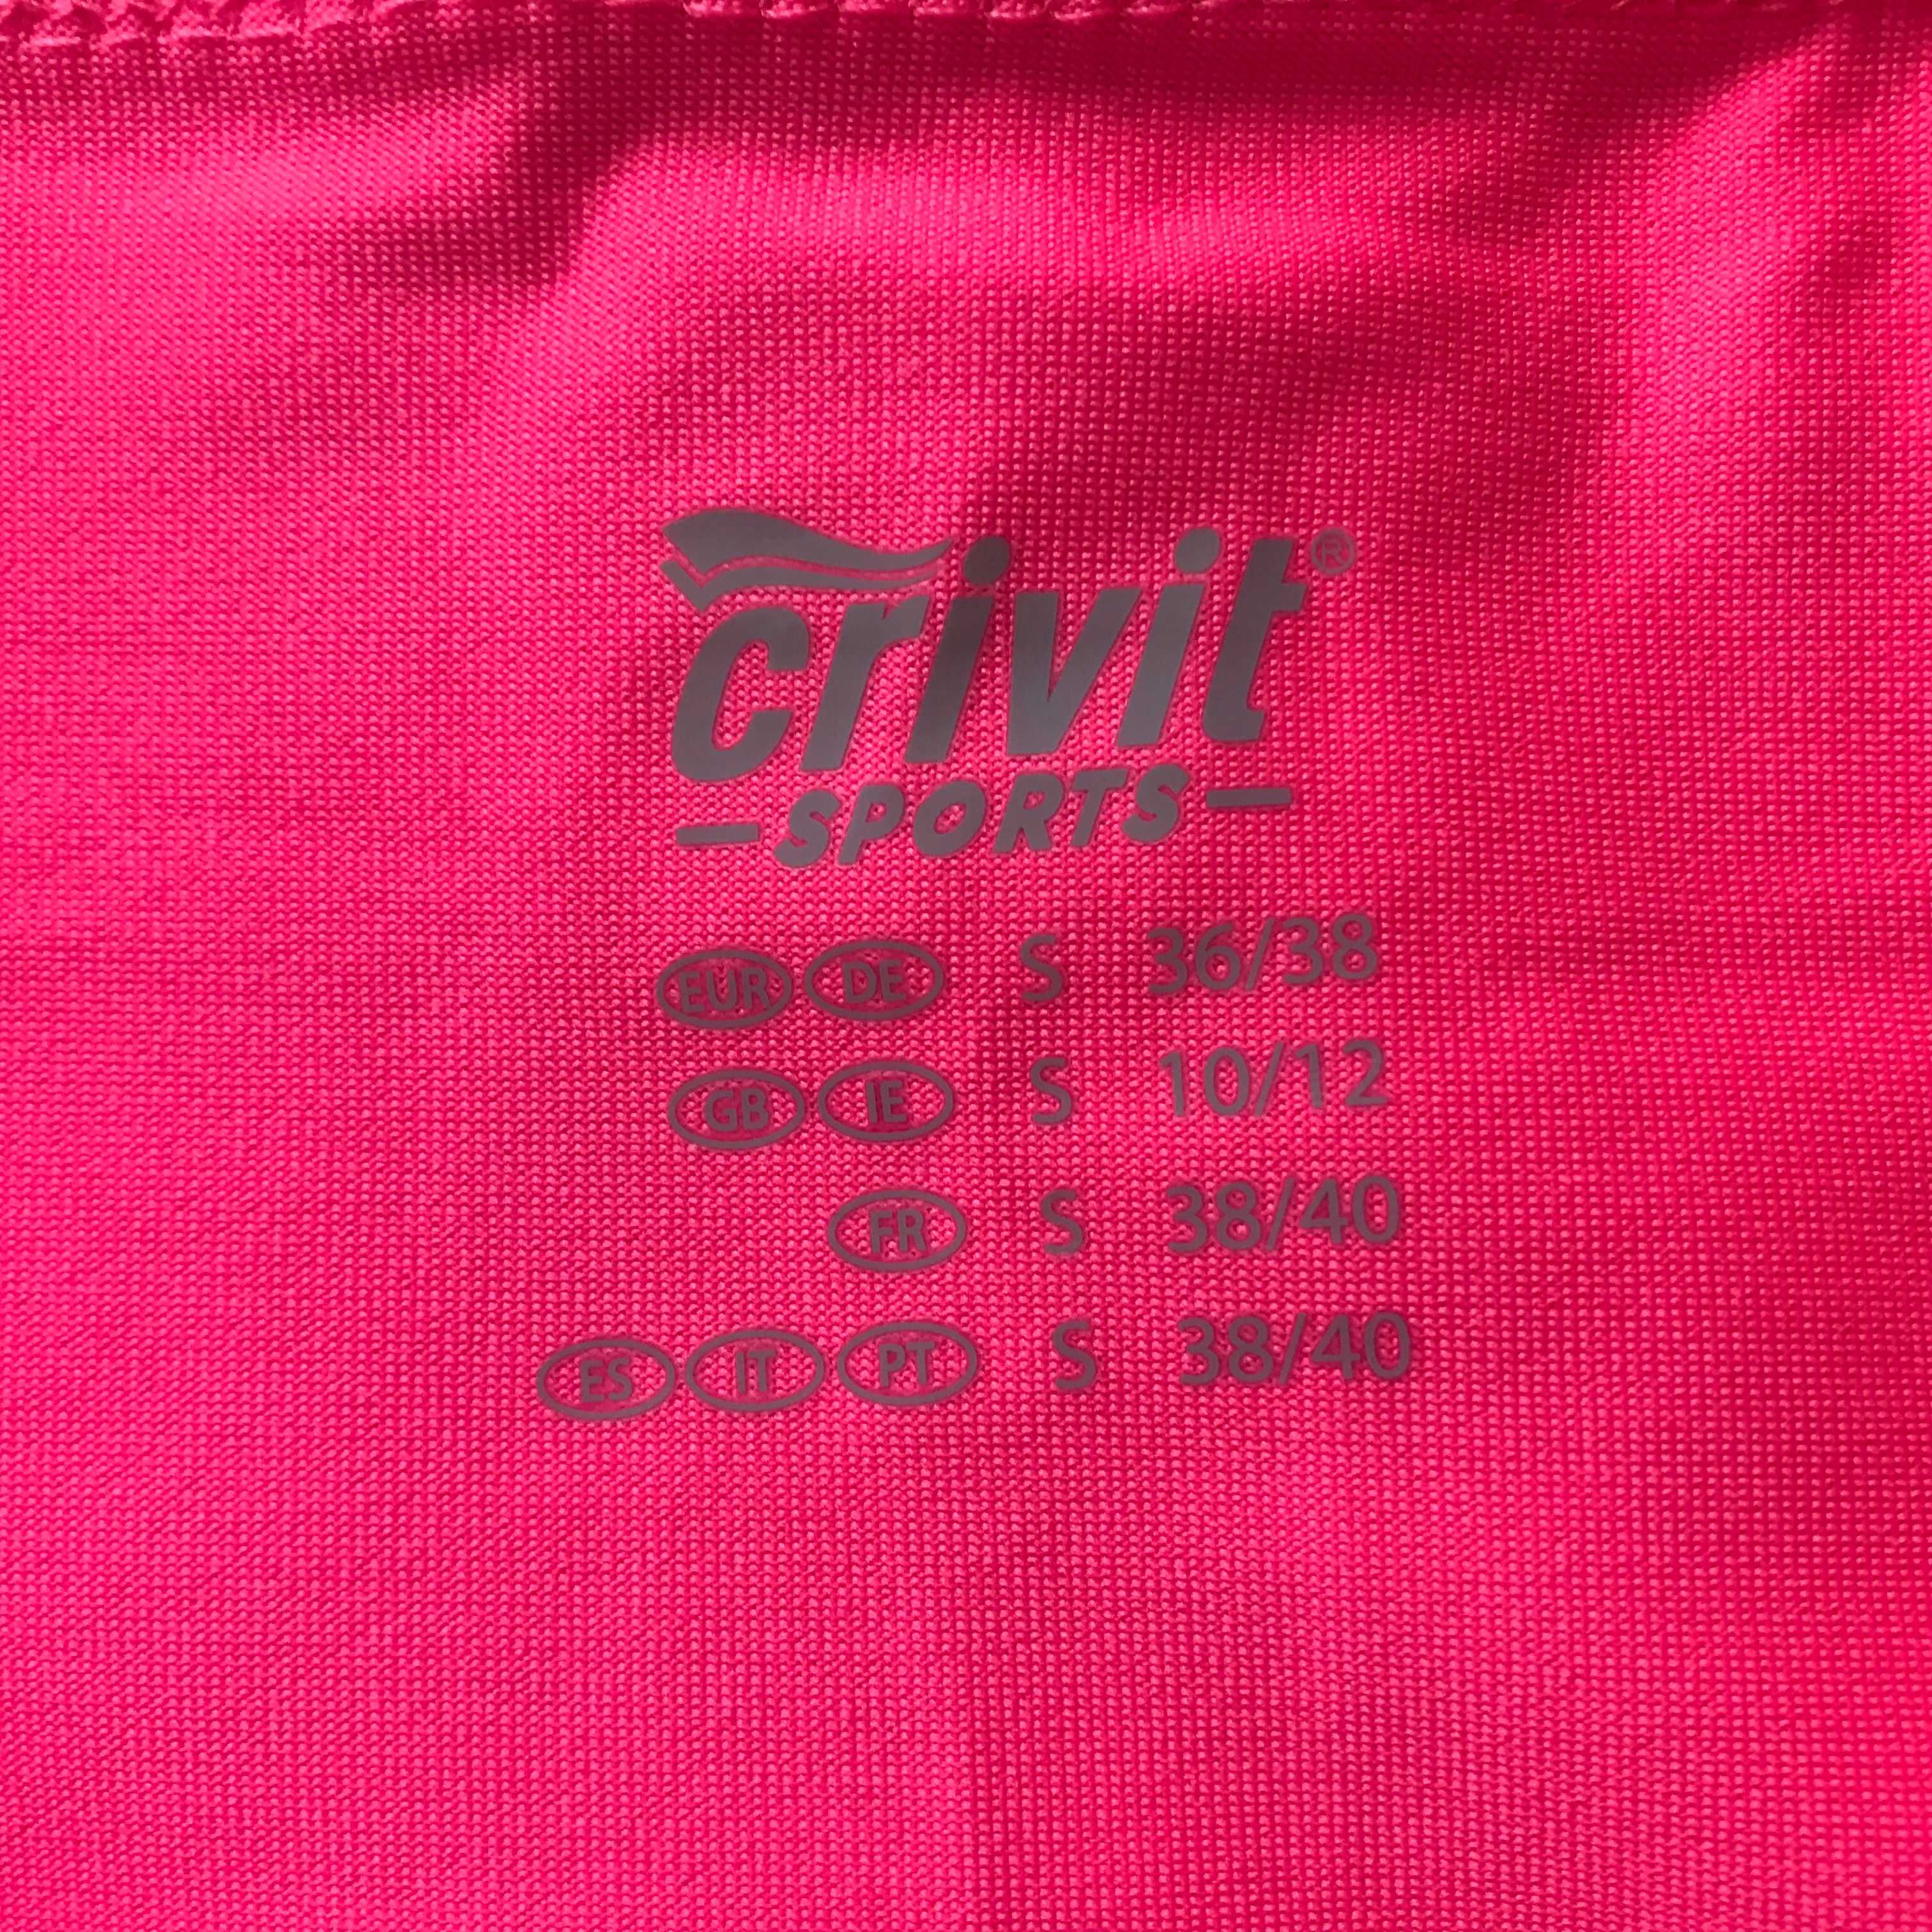 Sportowa bluzka firmy Crivit, rozmiar 38 ( duży)